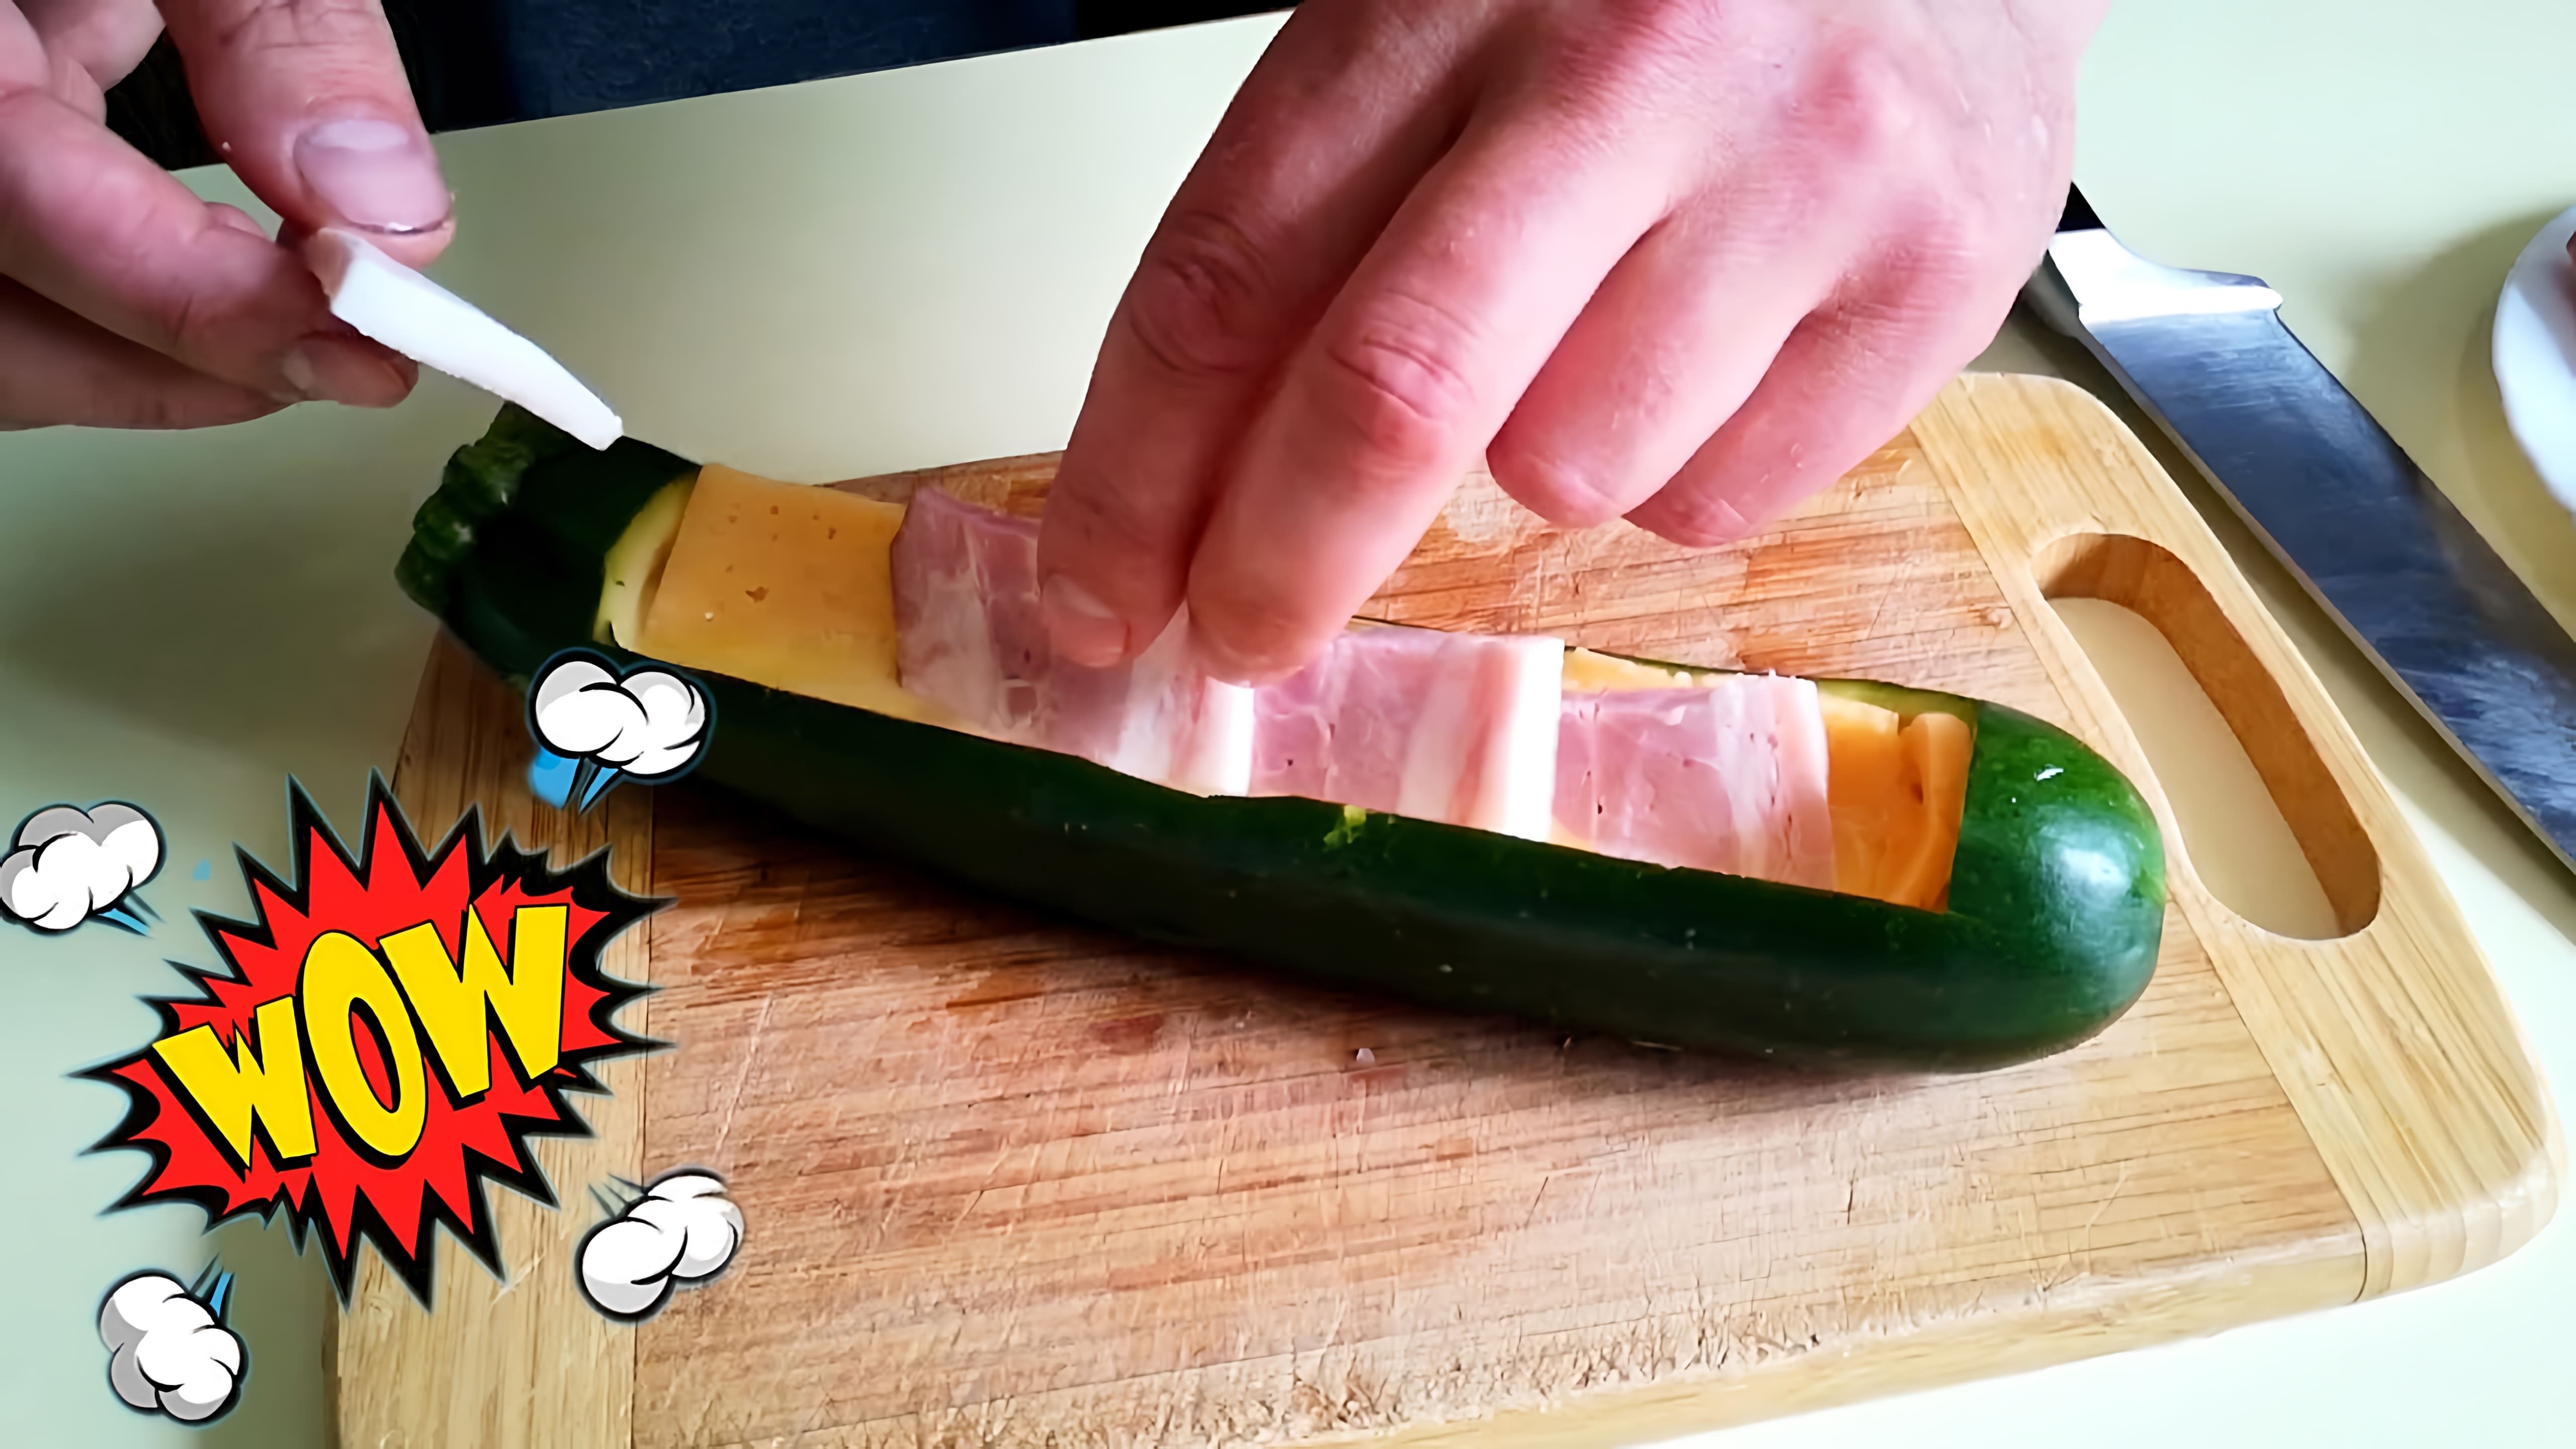 Заголовок: "Секретный рецепт нежнейшего кабачка с беконом и сыром в духовке!"

Содержание видео-ролика:

1